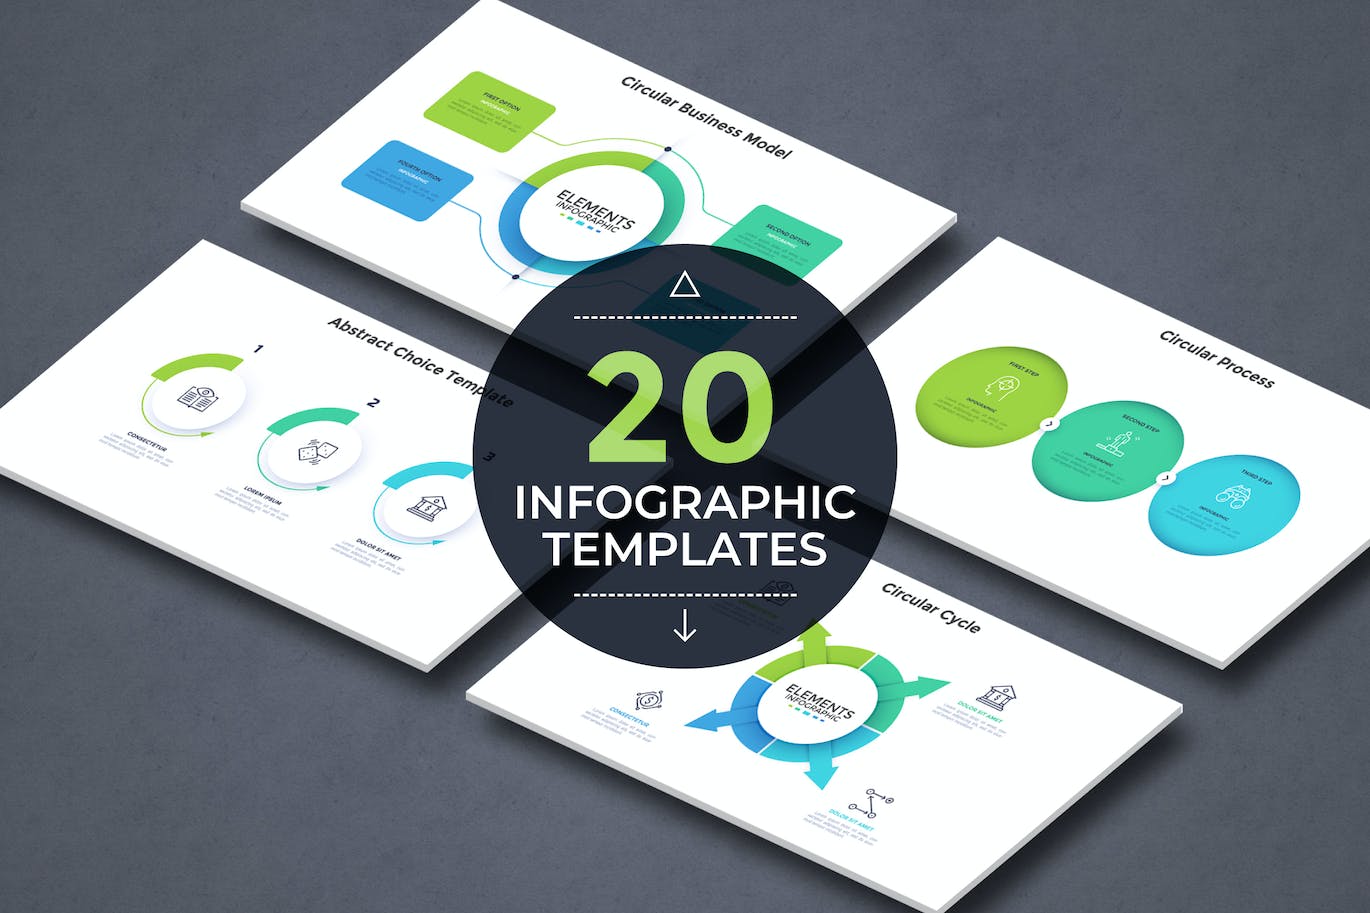 彩色纸张风格现代信息图表模板v12 20 Infographic Template v.12 幻灯图表 第1张